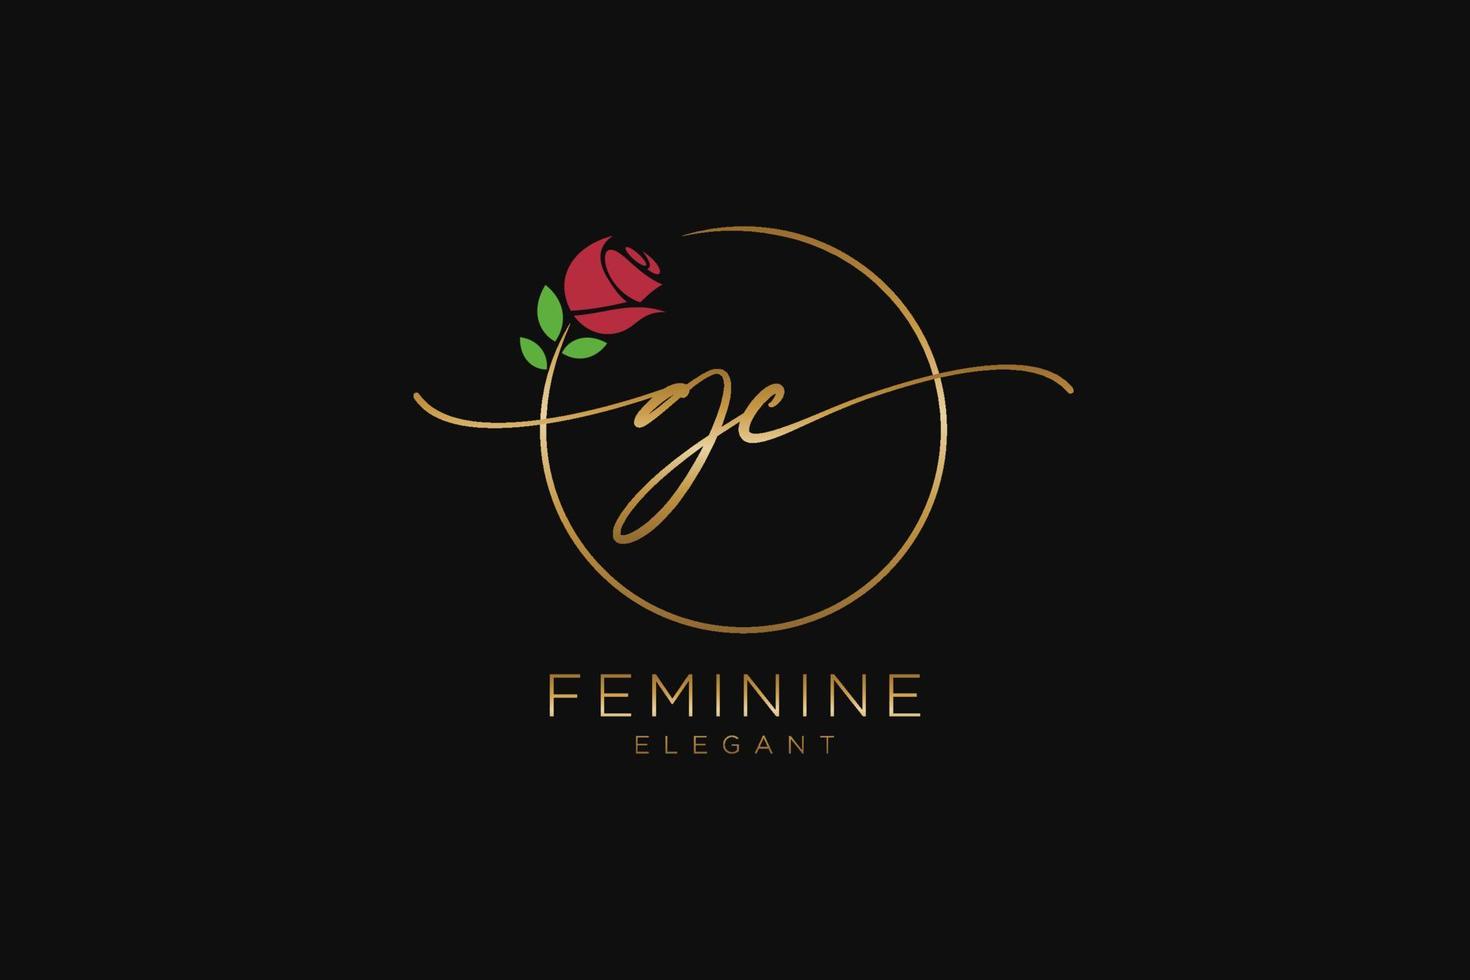 monogramme de beauté du logo féminin initial gc et design élégant du logo, logo manuscrit de la signature initiale, mariage, mode, floral et botanique avec modèle créatif. vecteur